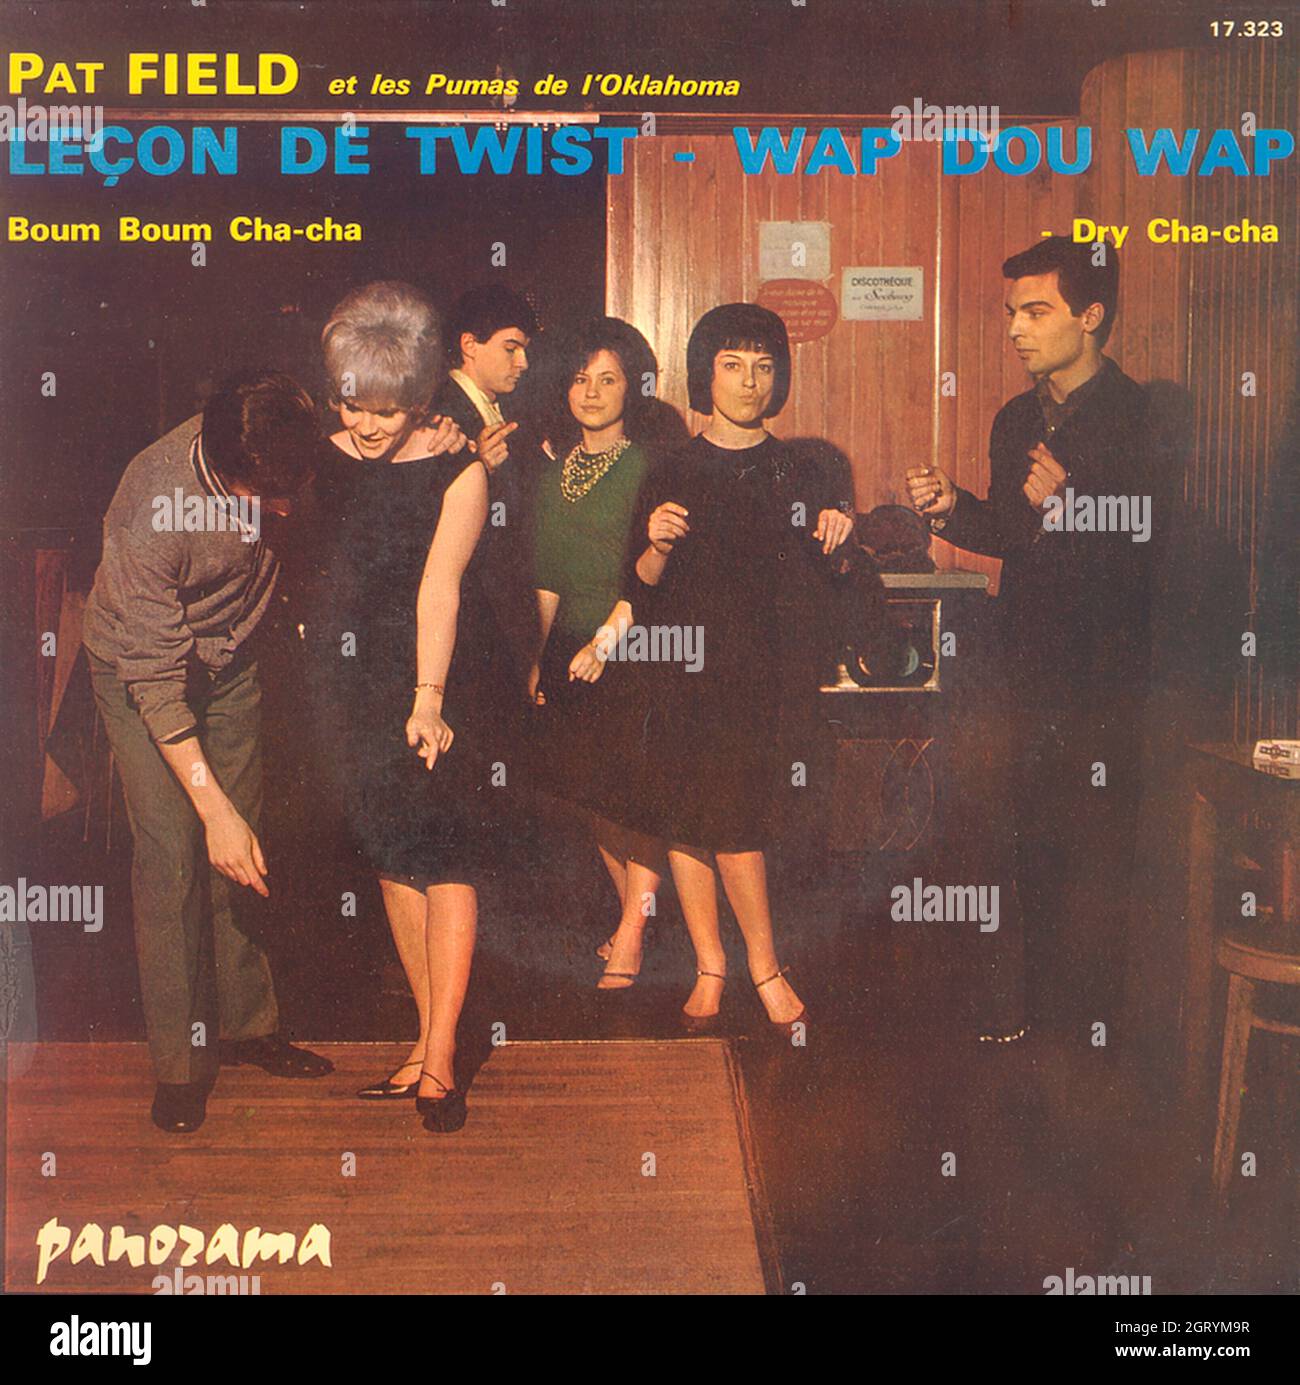 Pat Field & les Pumas de l'Oklahoma - Leçon de Twist - Wap Dou Wap EP - Vintage Vinyl Record Cover Stock Photo